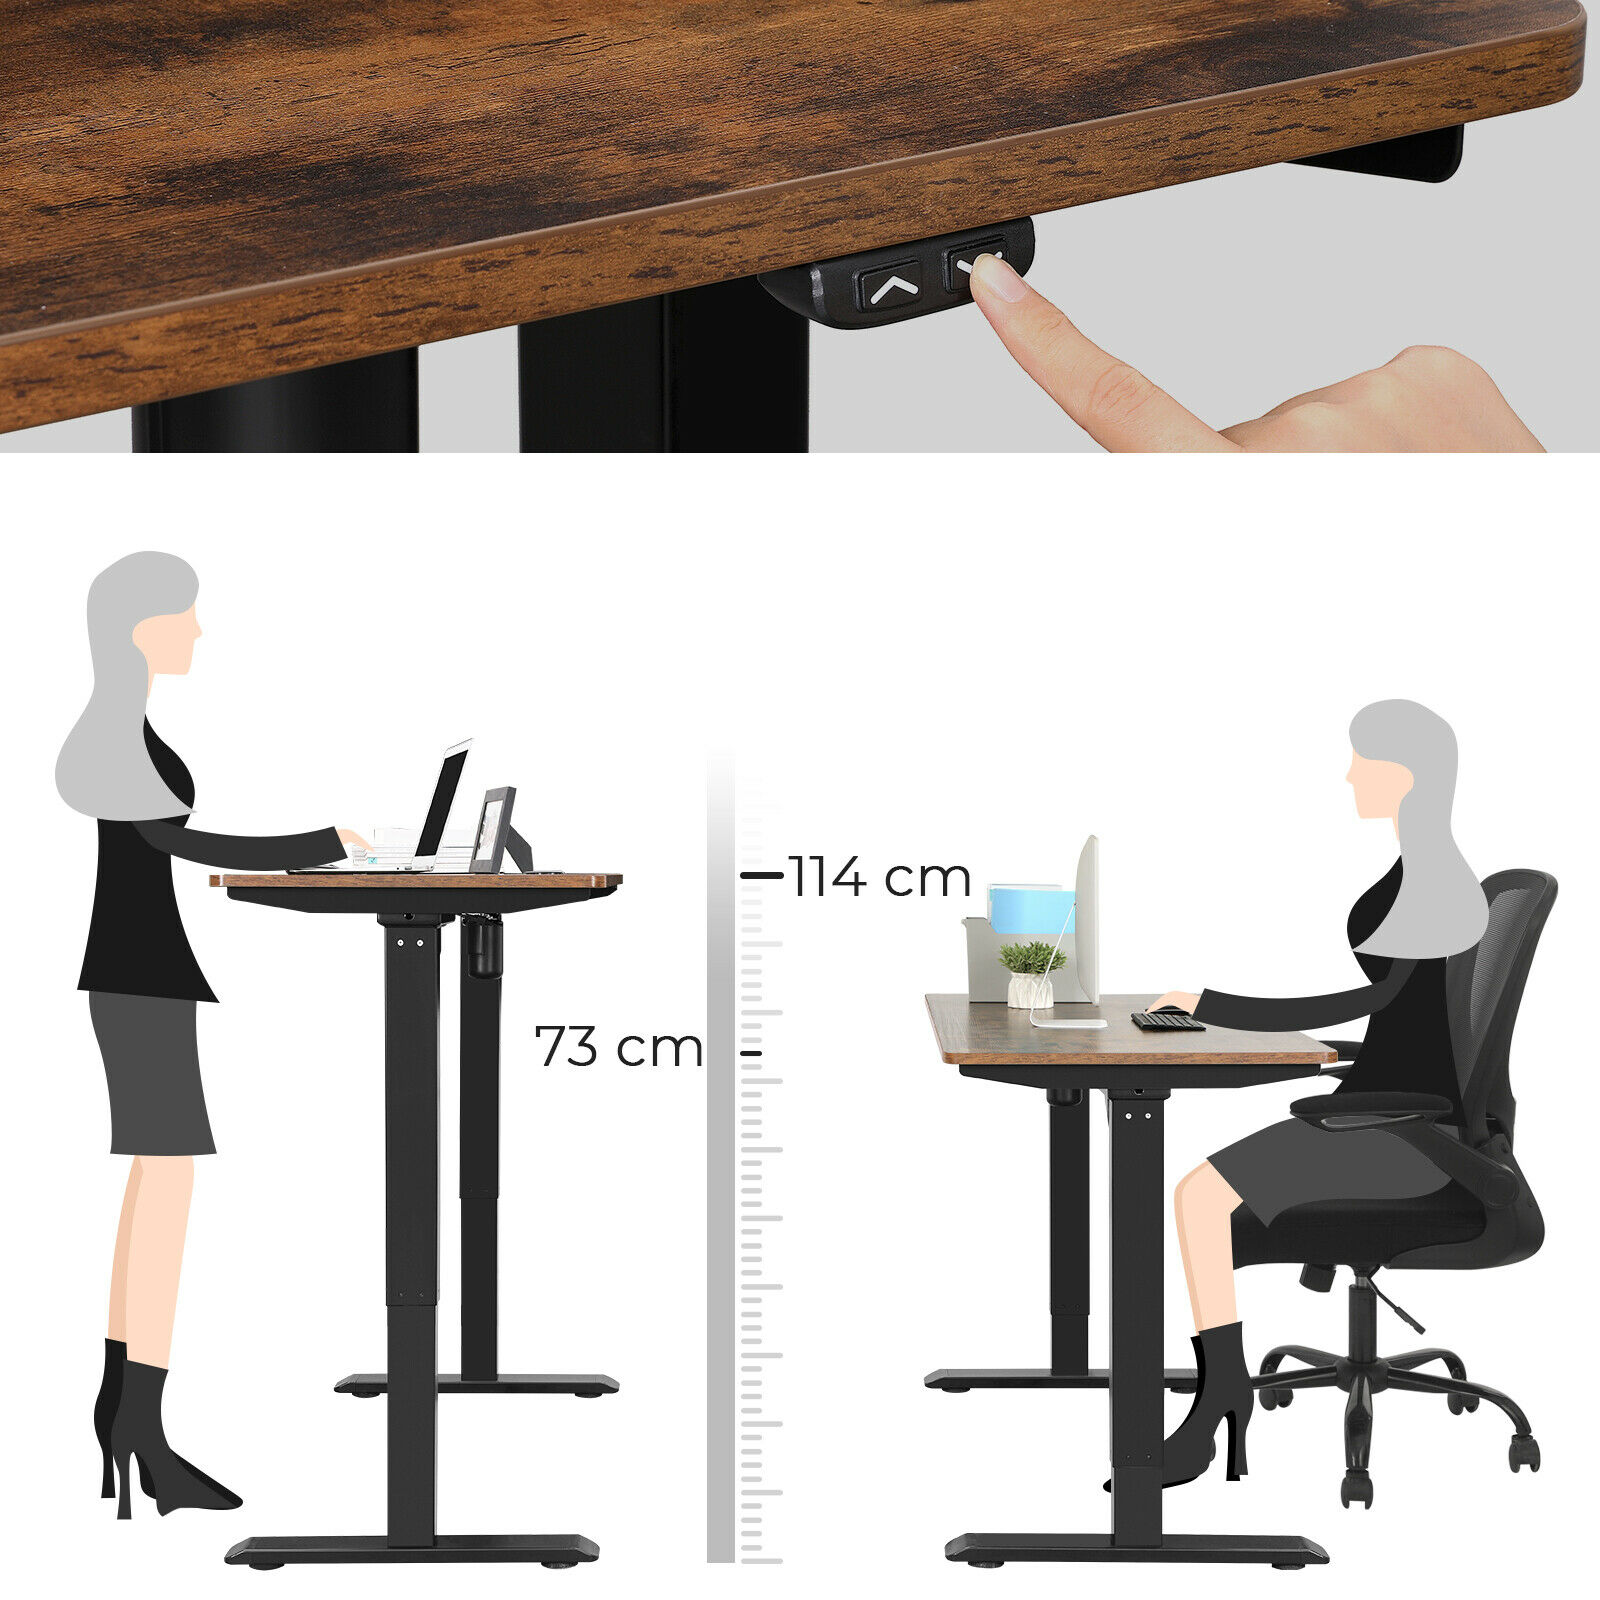 Rena Height Adjustable Standing Desk Rustic Wood Top